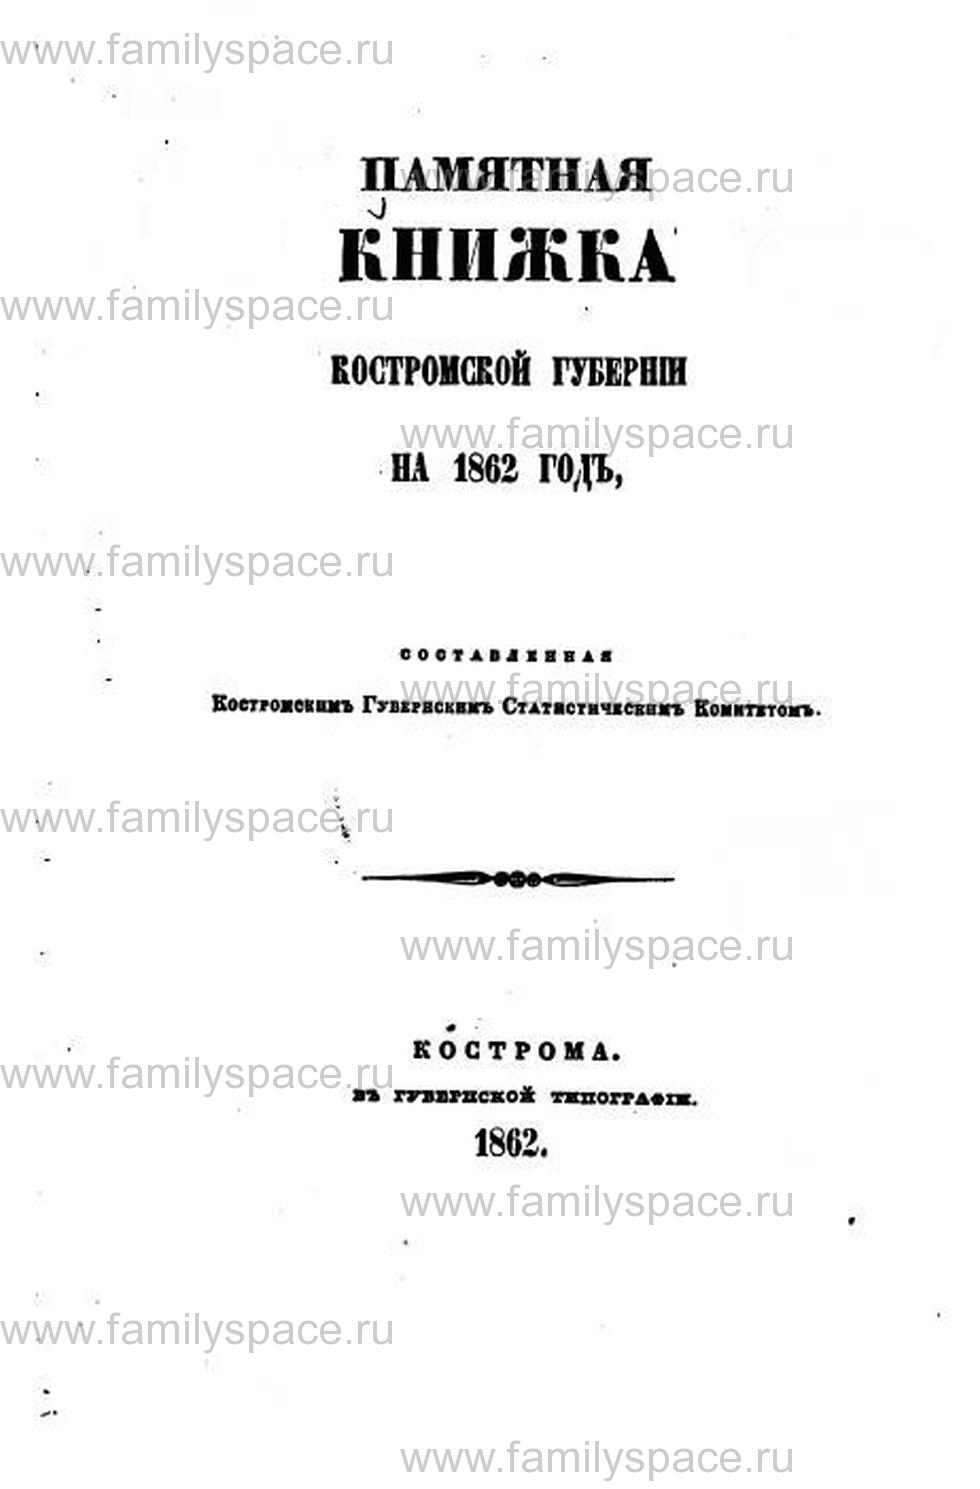 Поиск по фамилии - Памятная книжка Костромской губернии 1862 г., страница 1